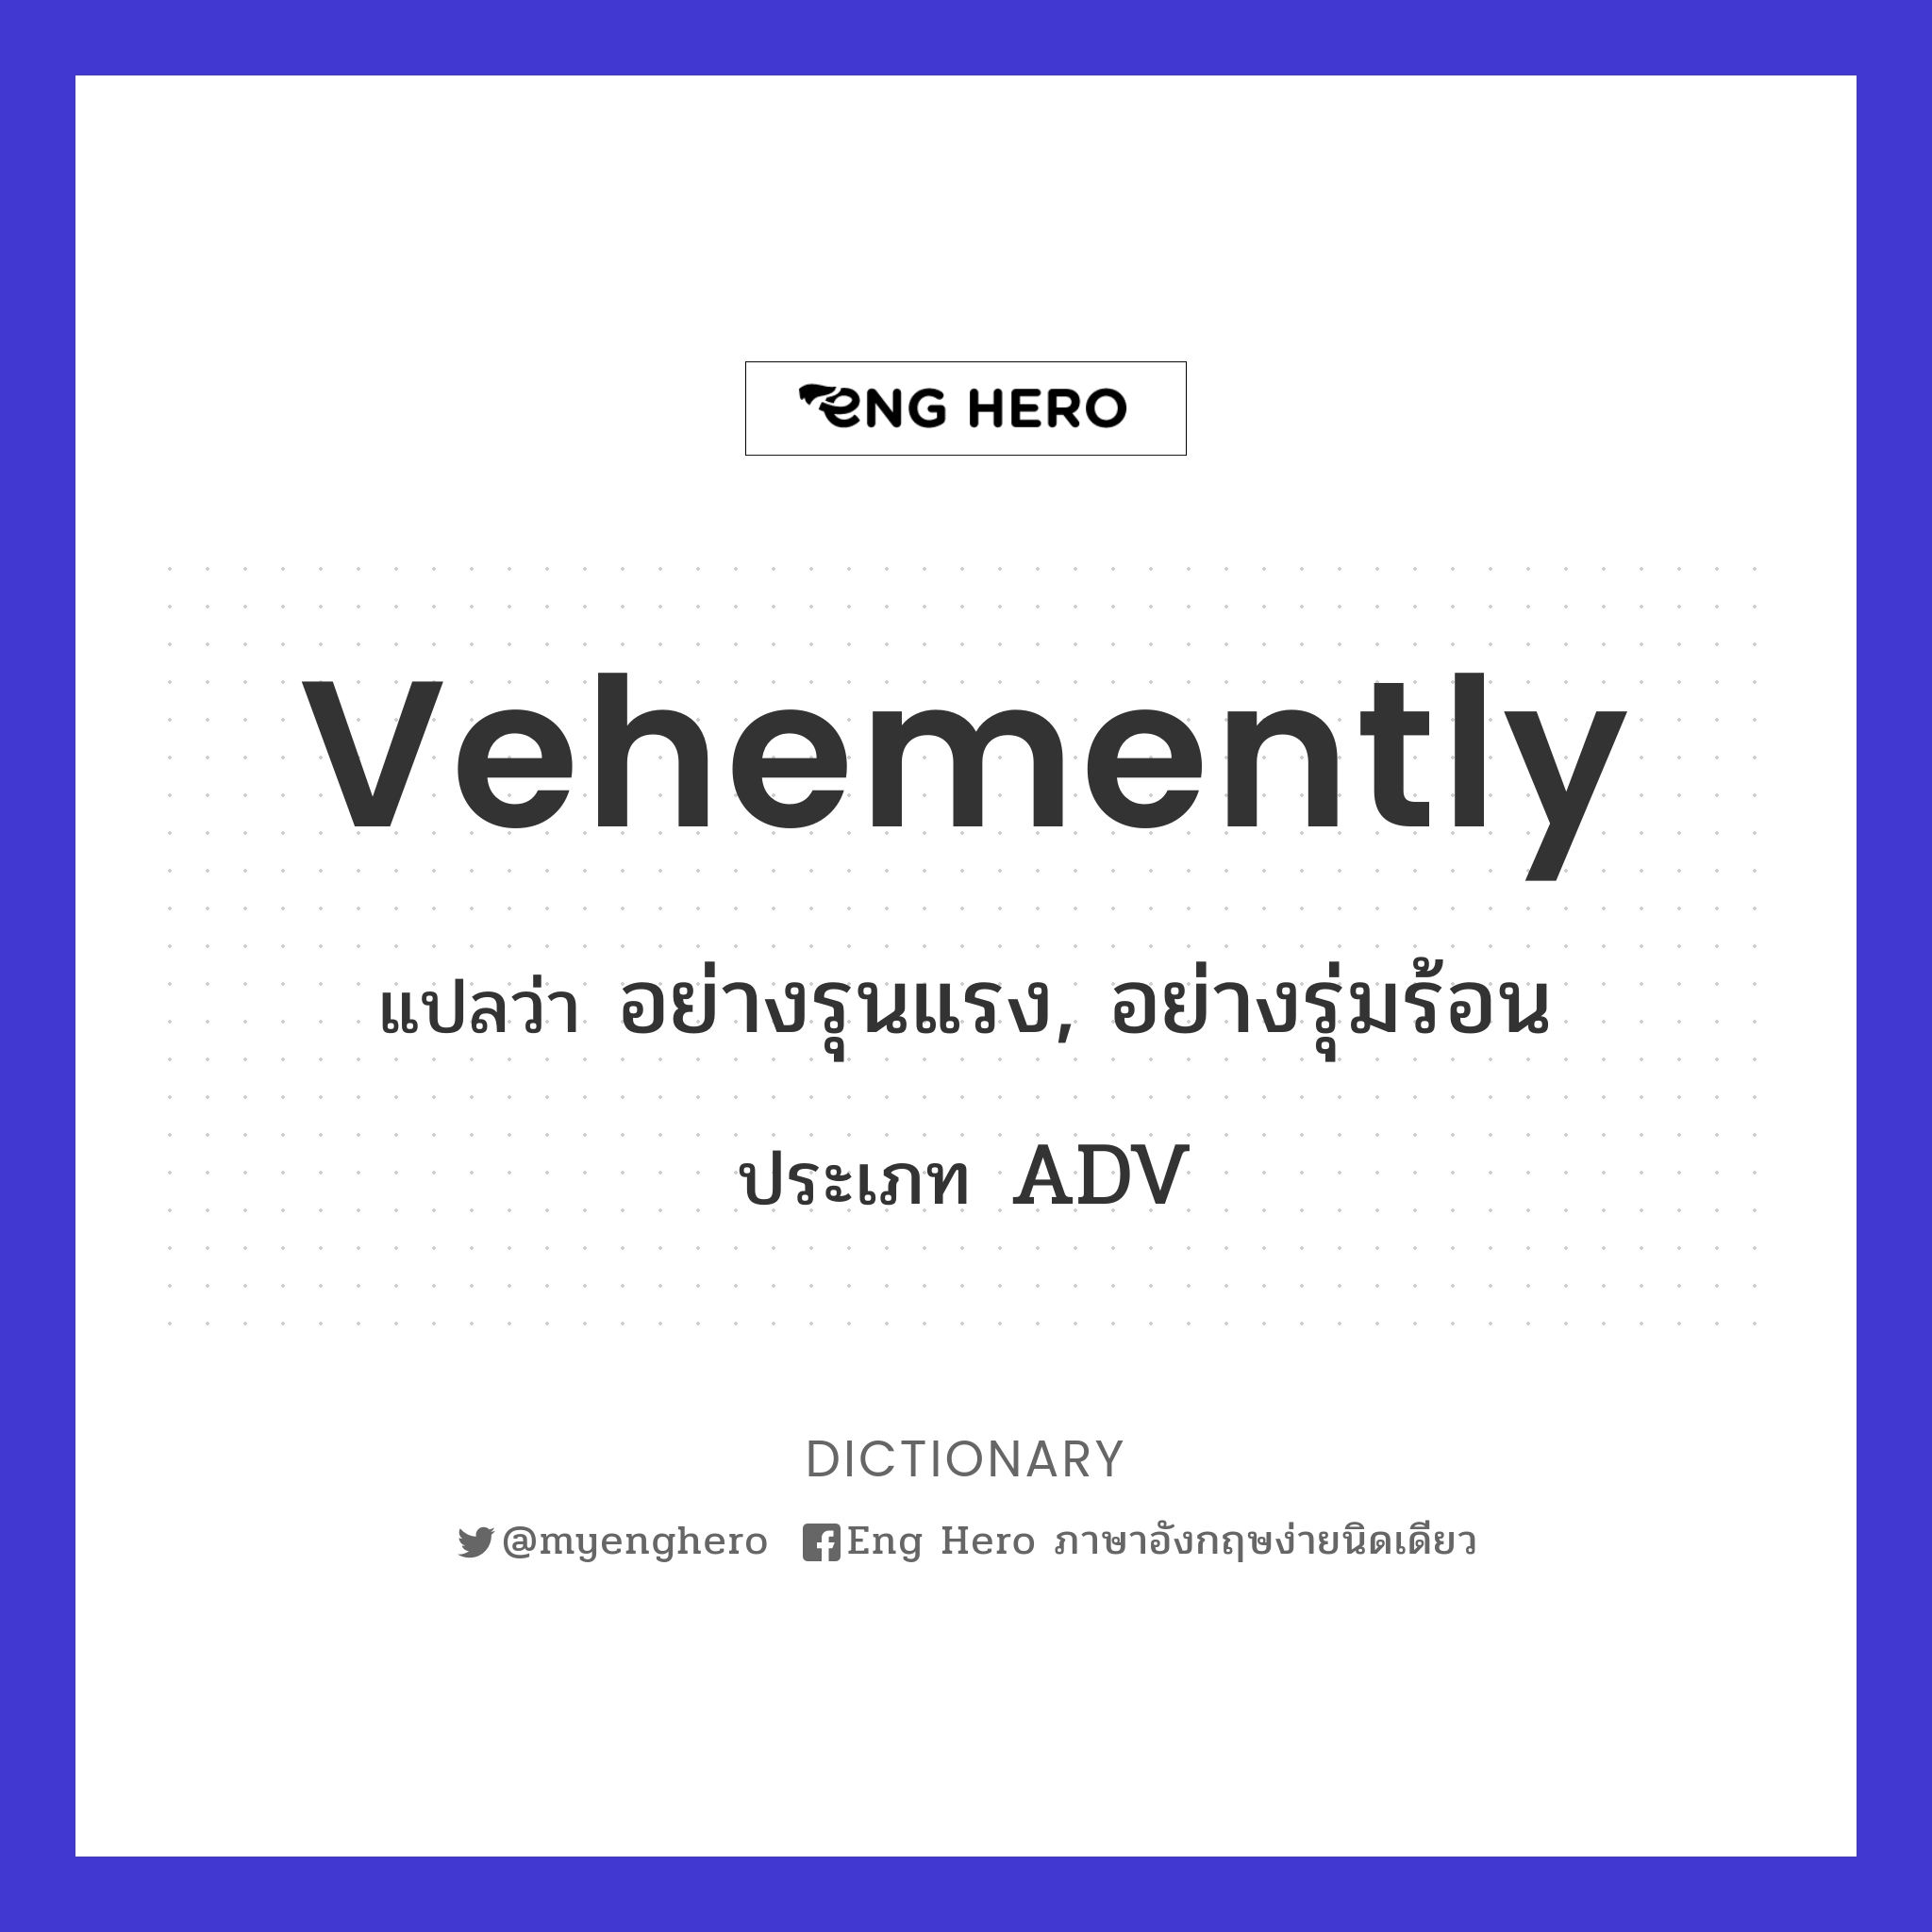 vehemently